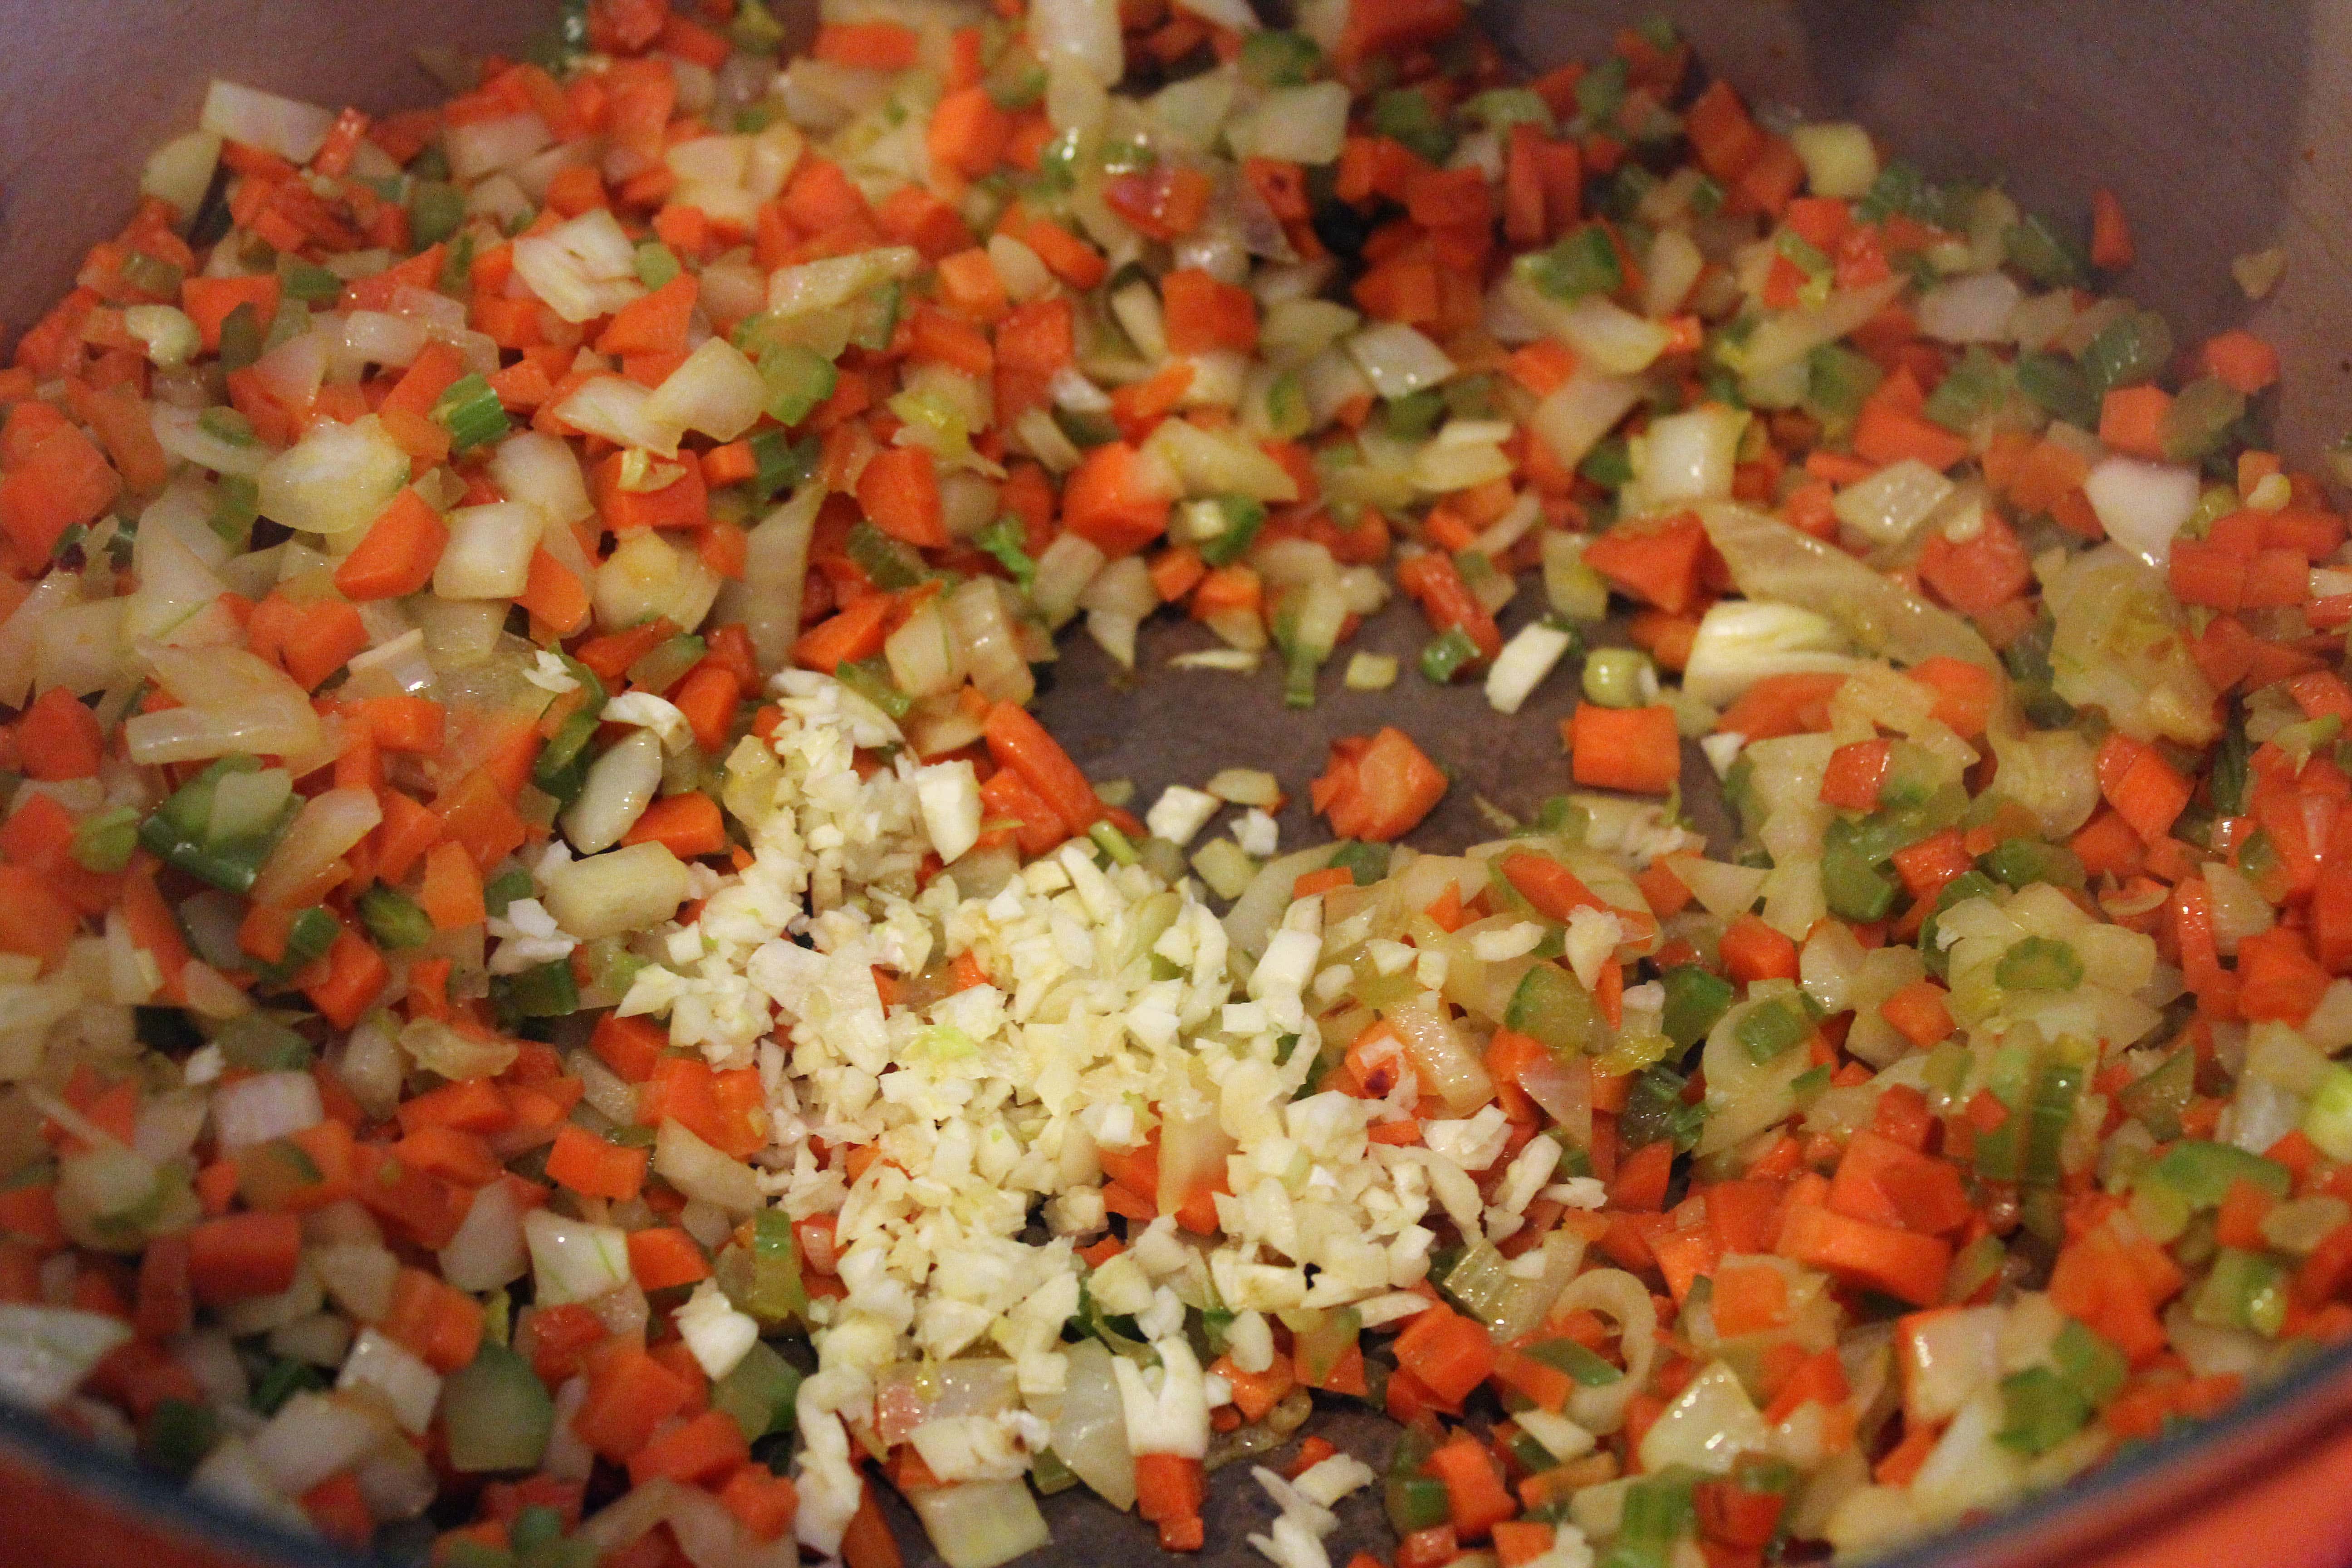 Add garlic to softened veggies